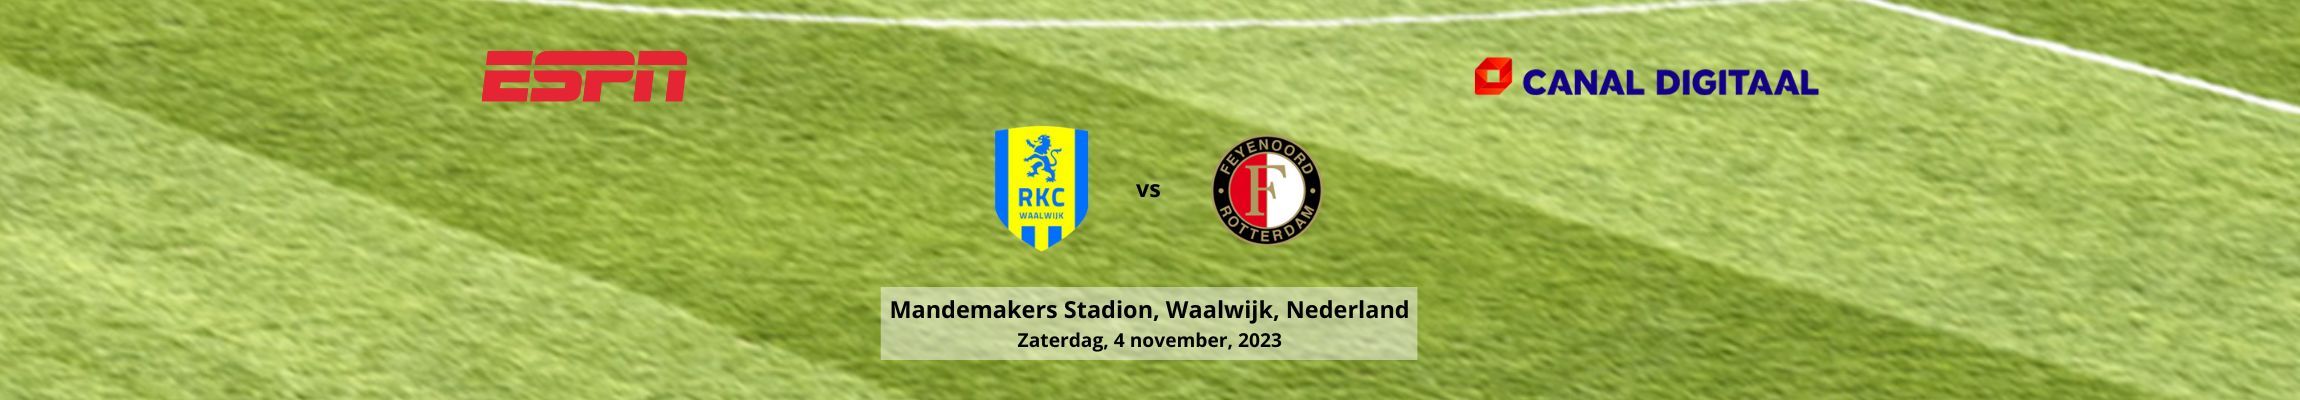 RKC Waalwijk vs Feyenoord